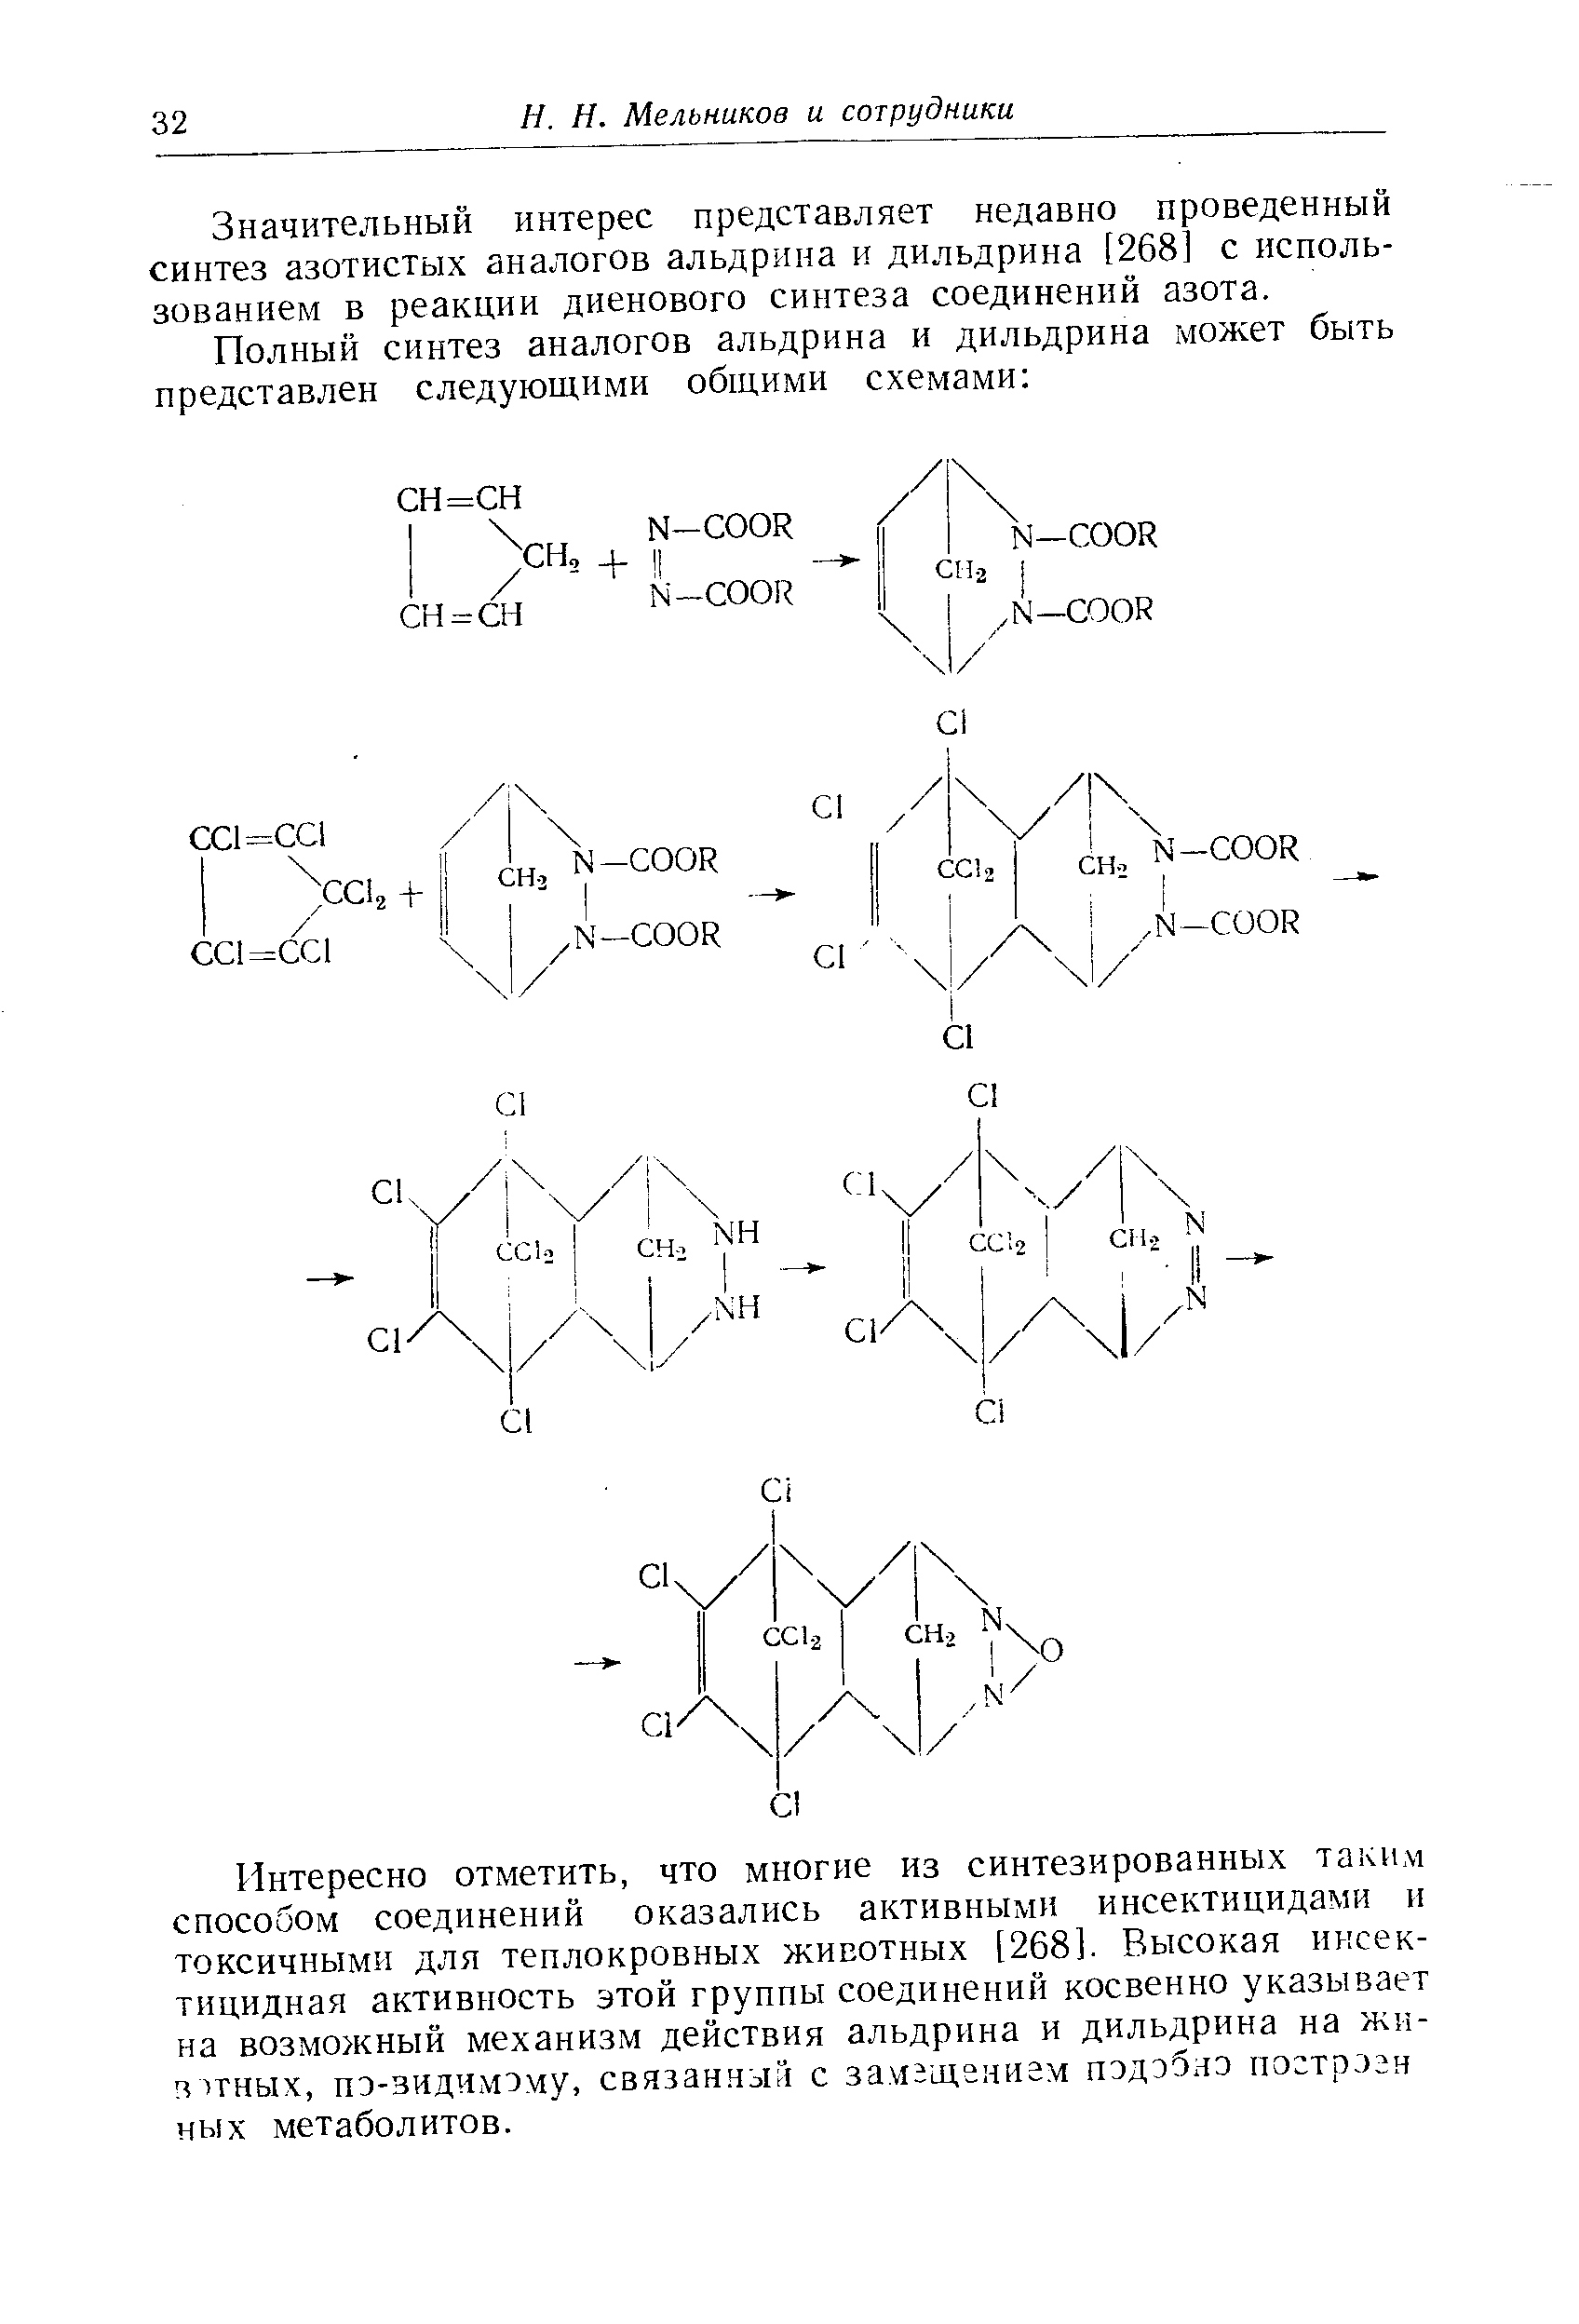 Значительный интерес представляет недавно проведенный синтез азотистых аналогов альдрина и дильдрина [268] с использованием в реакции диенового синтеза соединений азота.